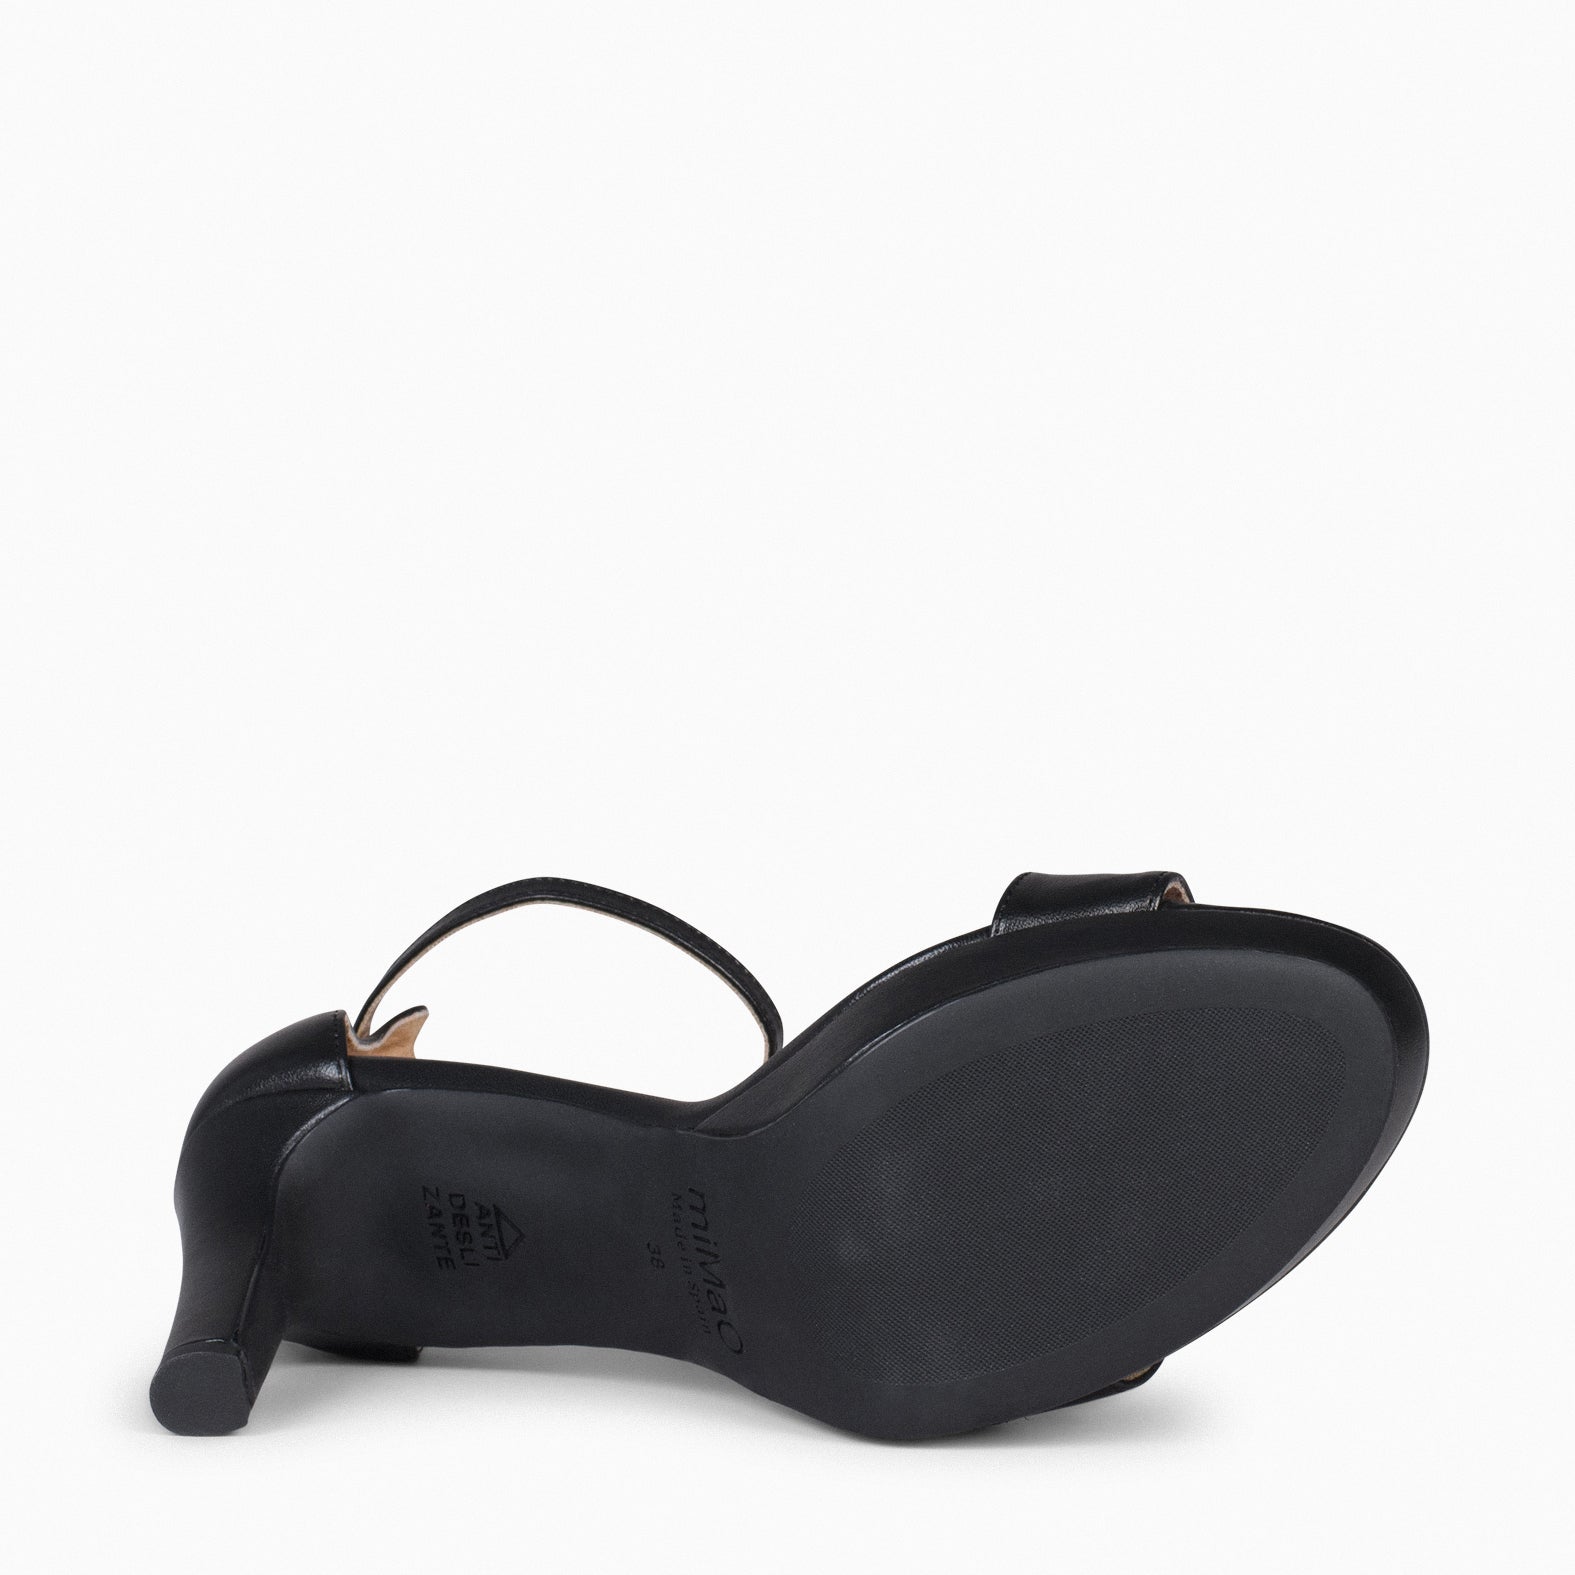 PARTY – BLACK  high-heeled platform sandals